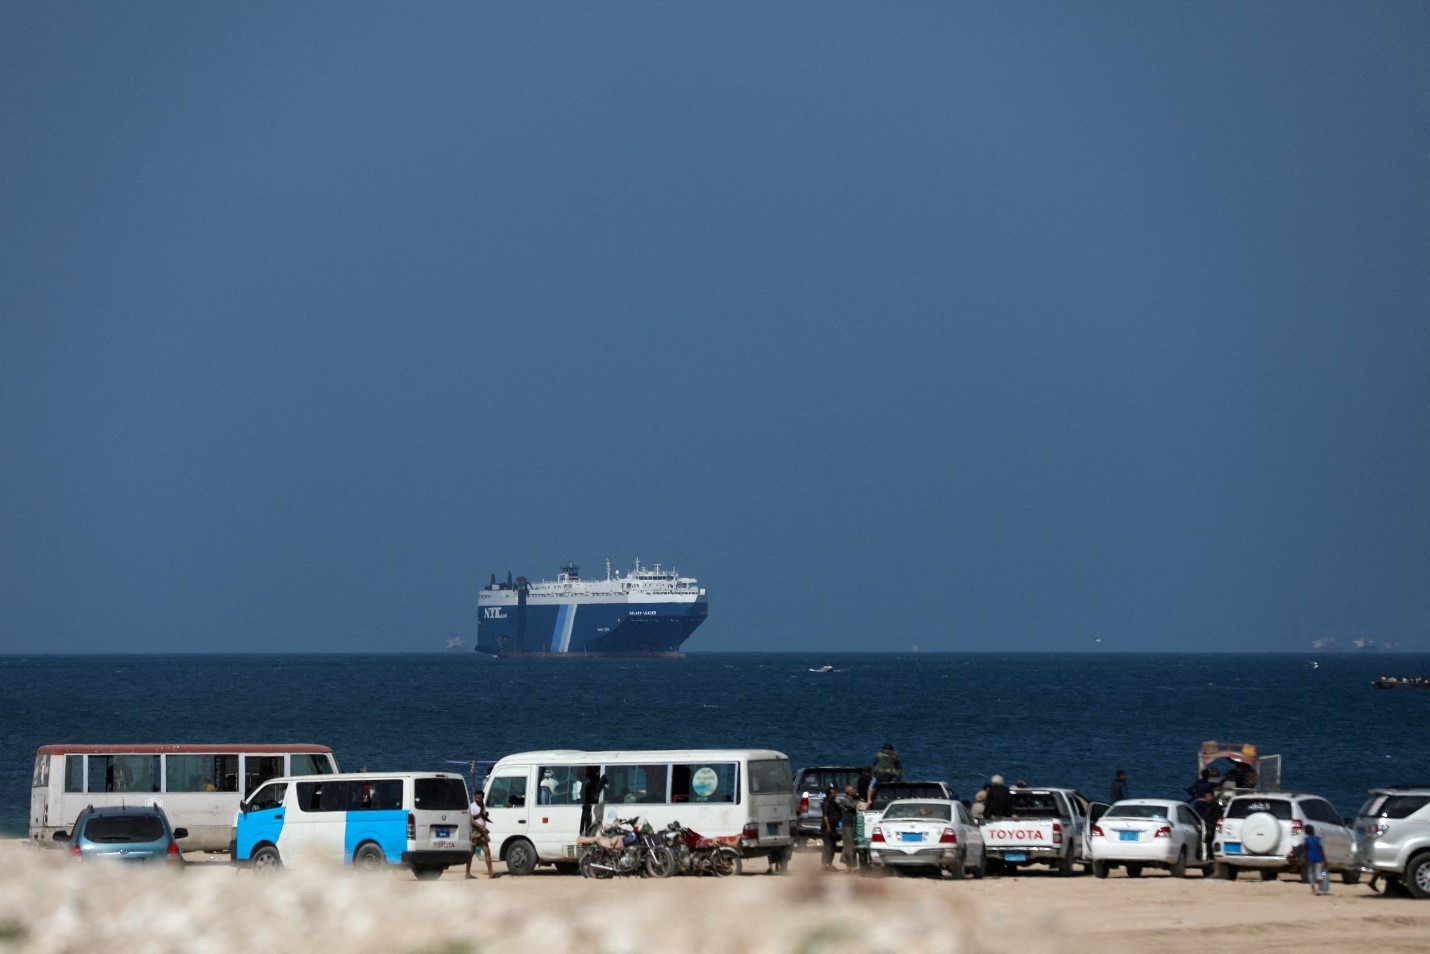 السفينة التجارية غالاكسي ليدر التي احتجزها الحوثيون في نوفمبر/تشرين الثاني الماضي